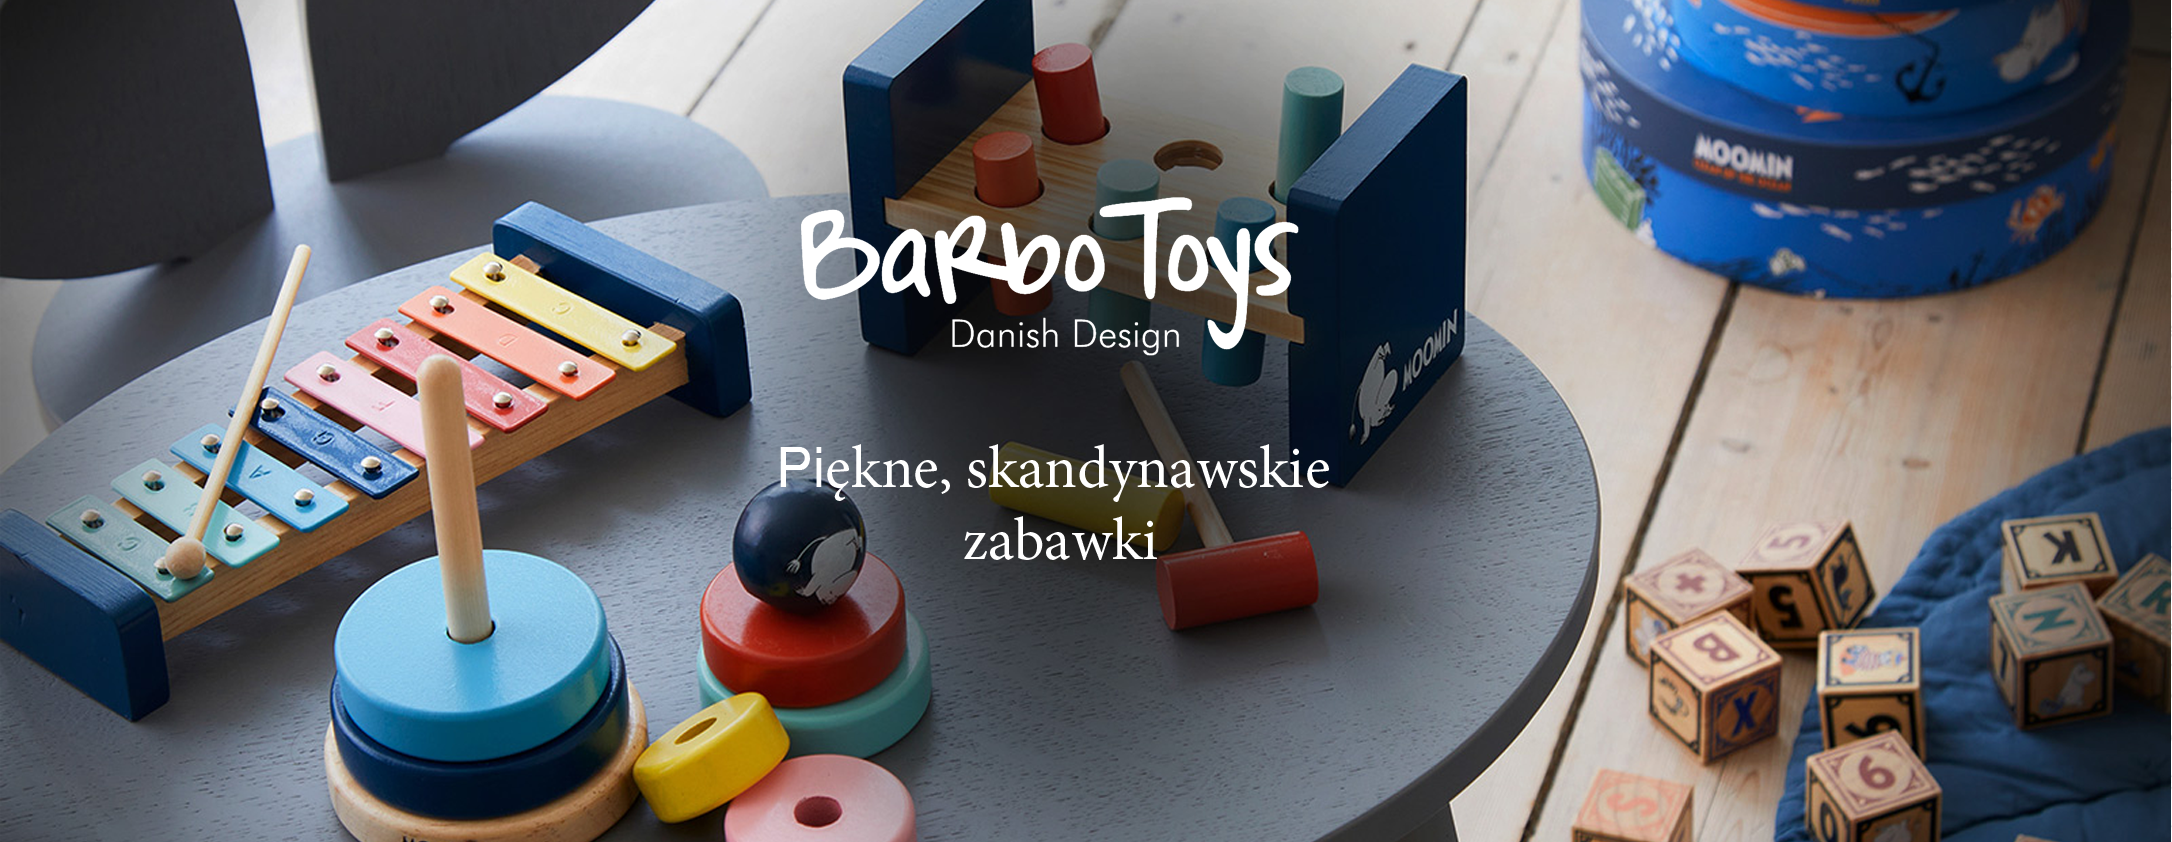 Barbo Toys zabawki skandynawskie